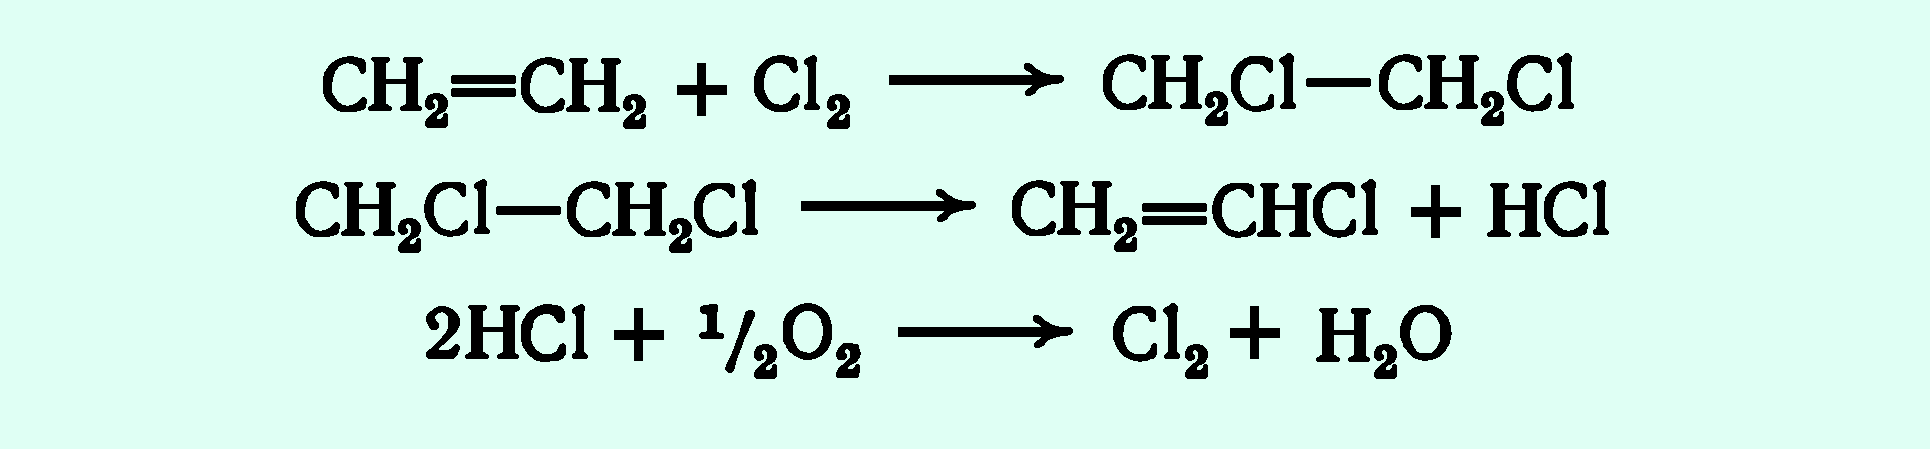 Ацетилен дихлорэтан реакция. Получение поливинилхлорида реакция. Винилхлорид из этилена реакция. Химические реакции получения поливинилхлорида из этилена. Поливинилхлорид формула получения.